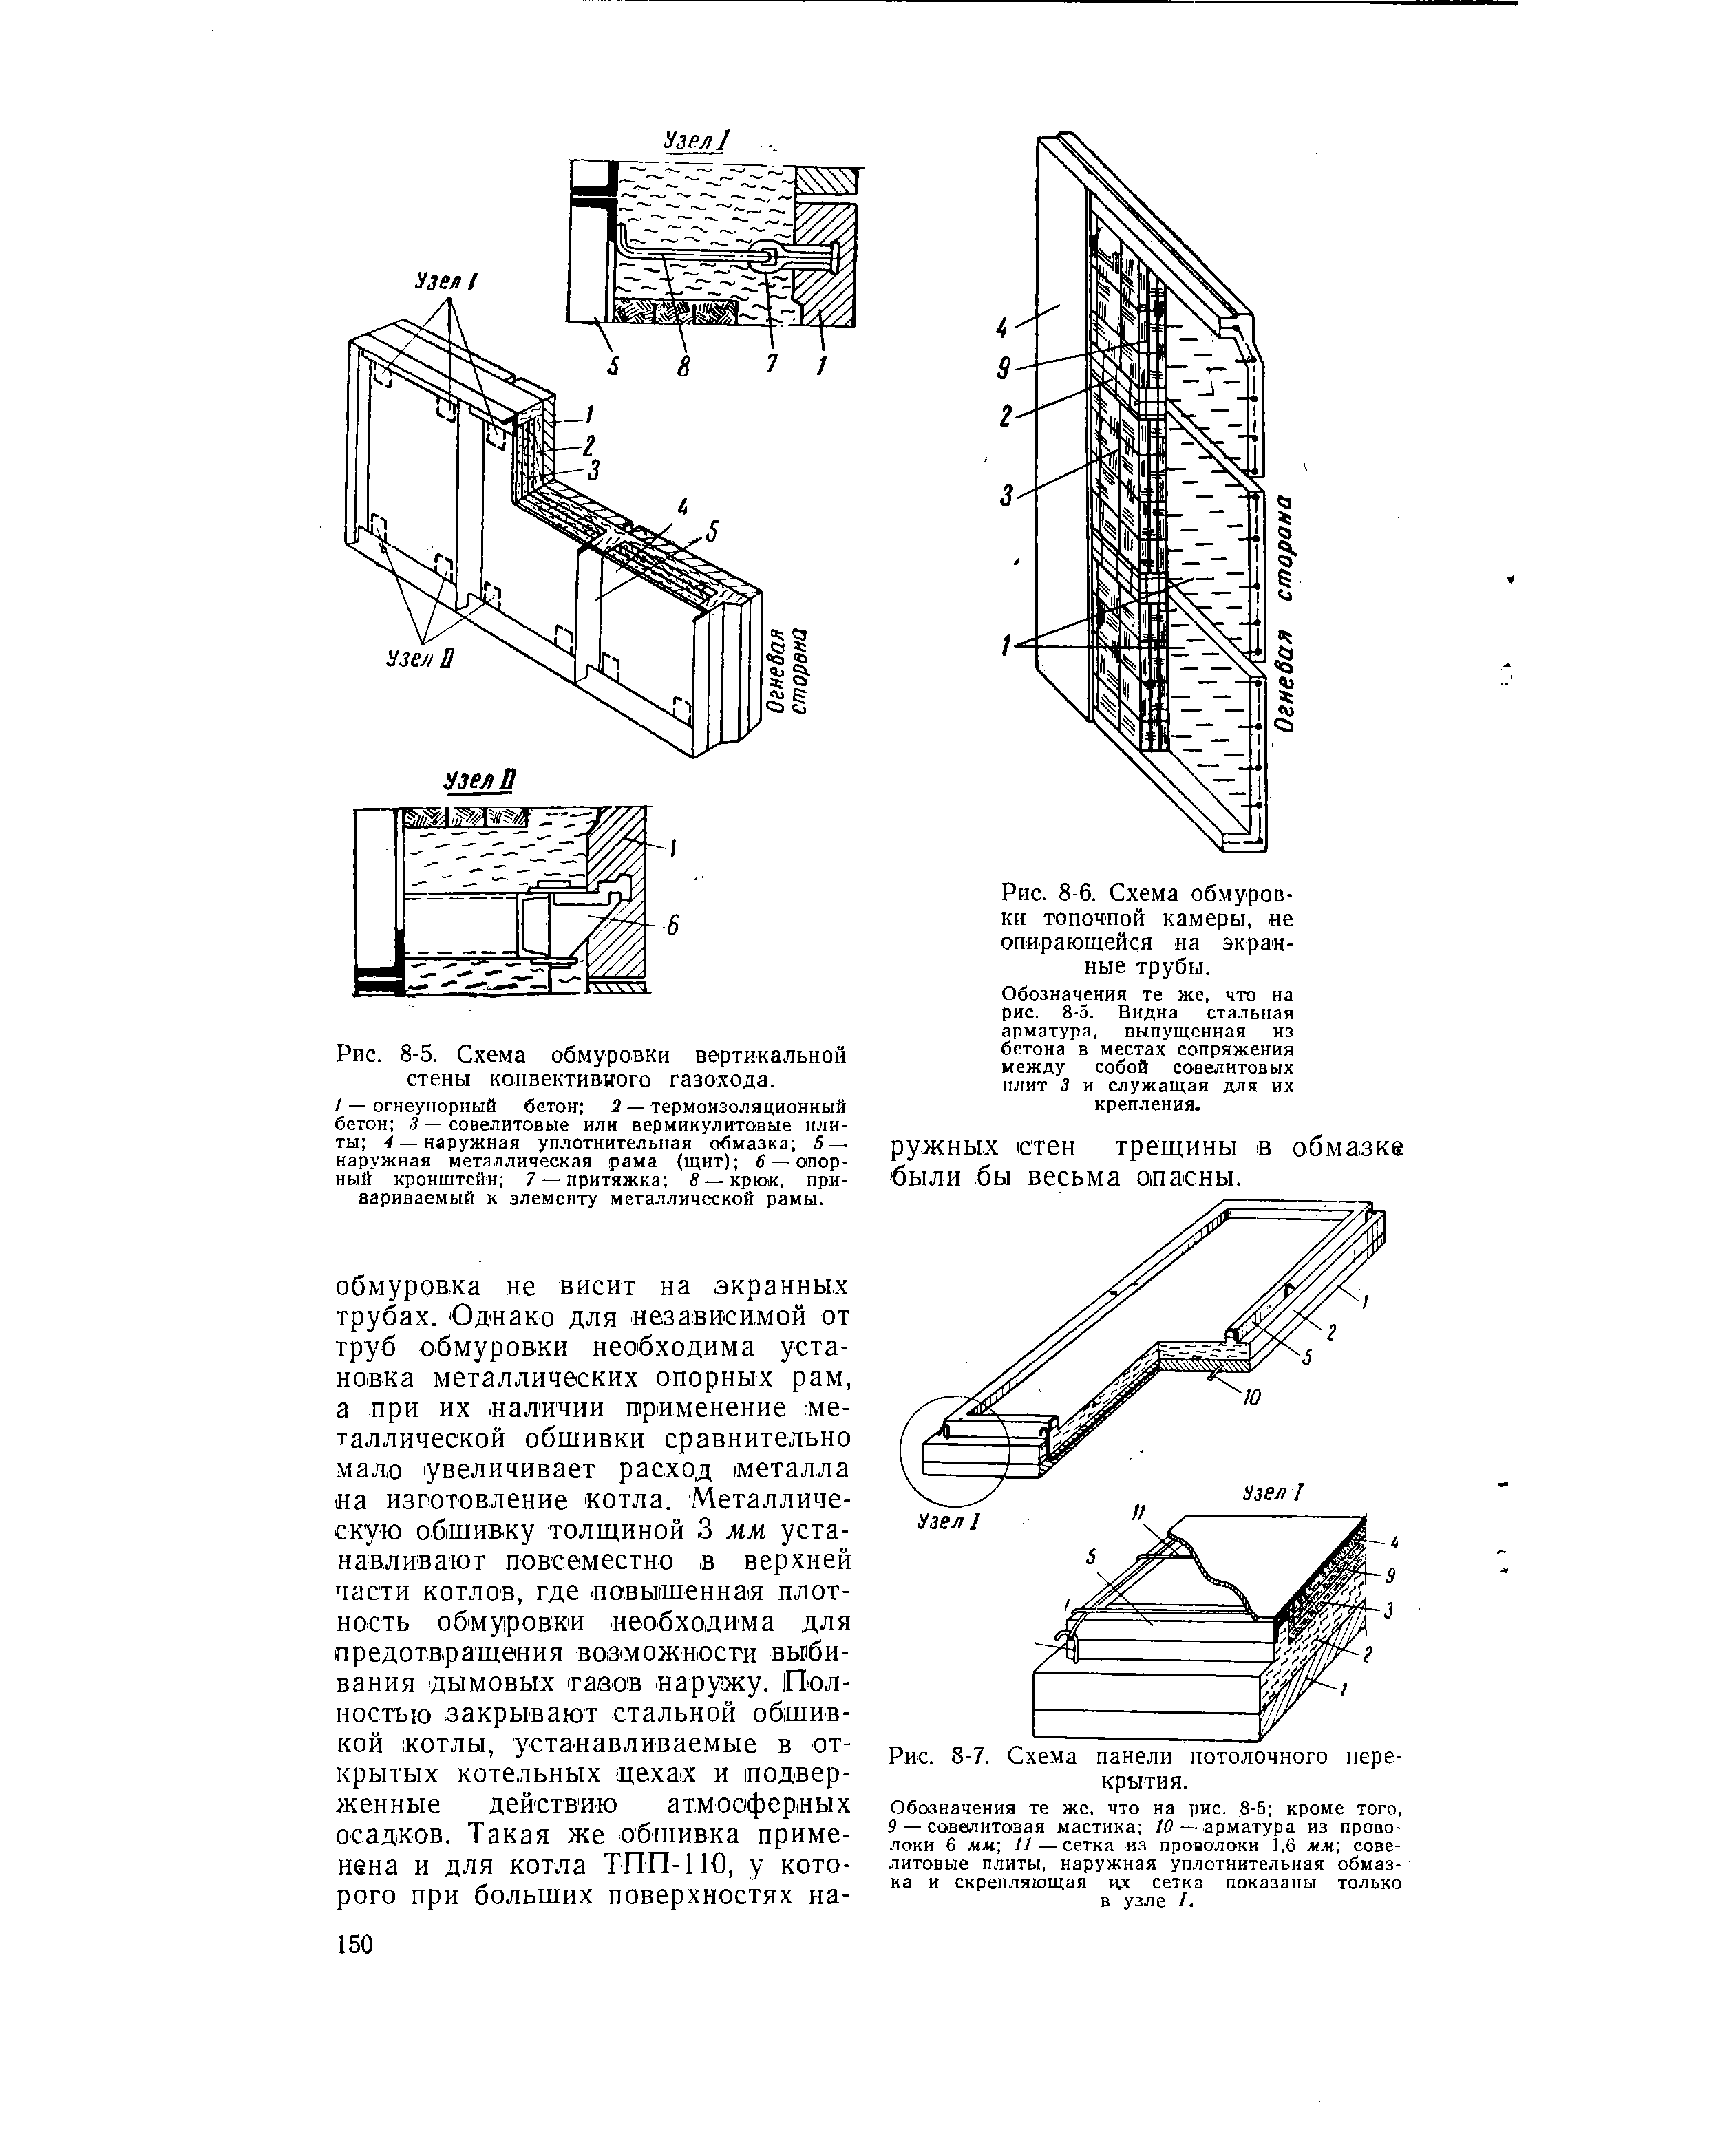 Рис. 8-5. Схема обмуровки вертикальной стены конвективиого газохода.
